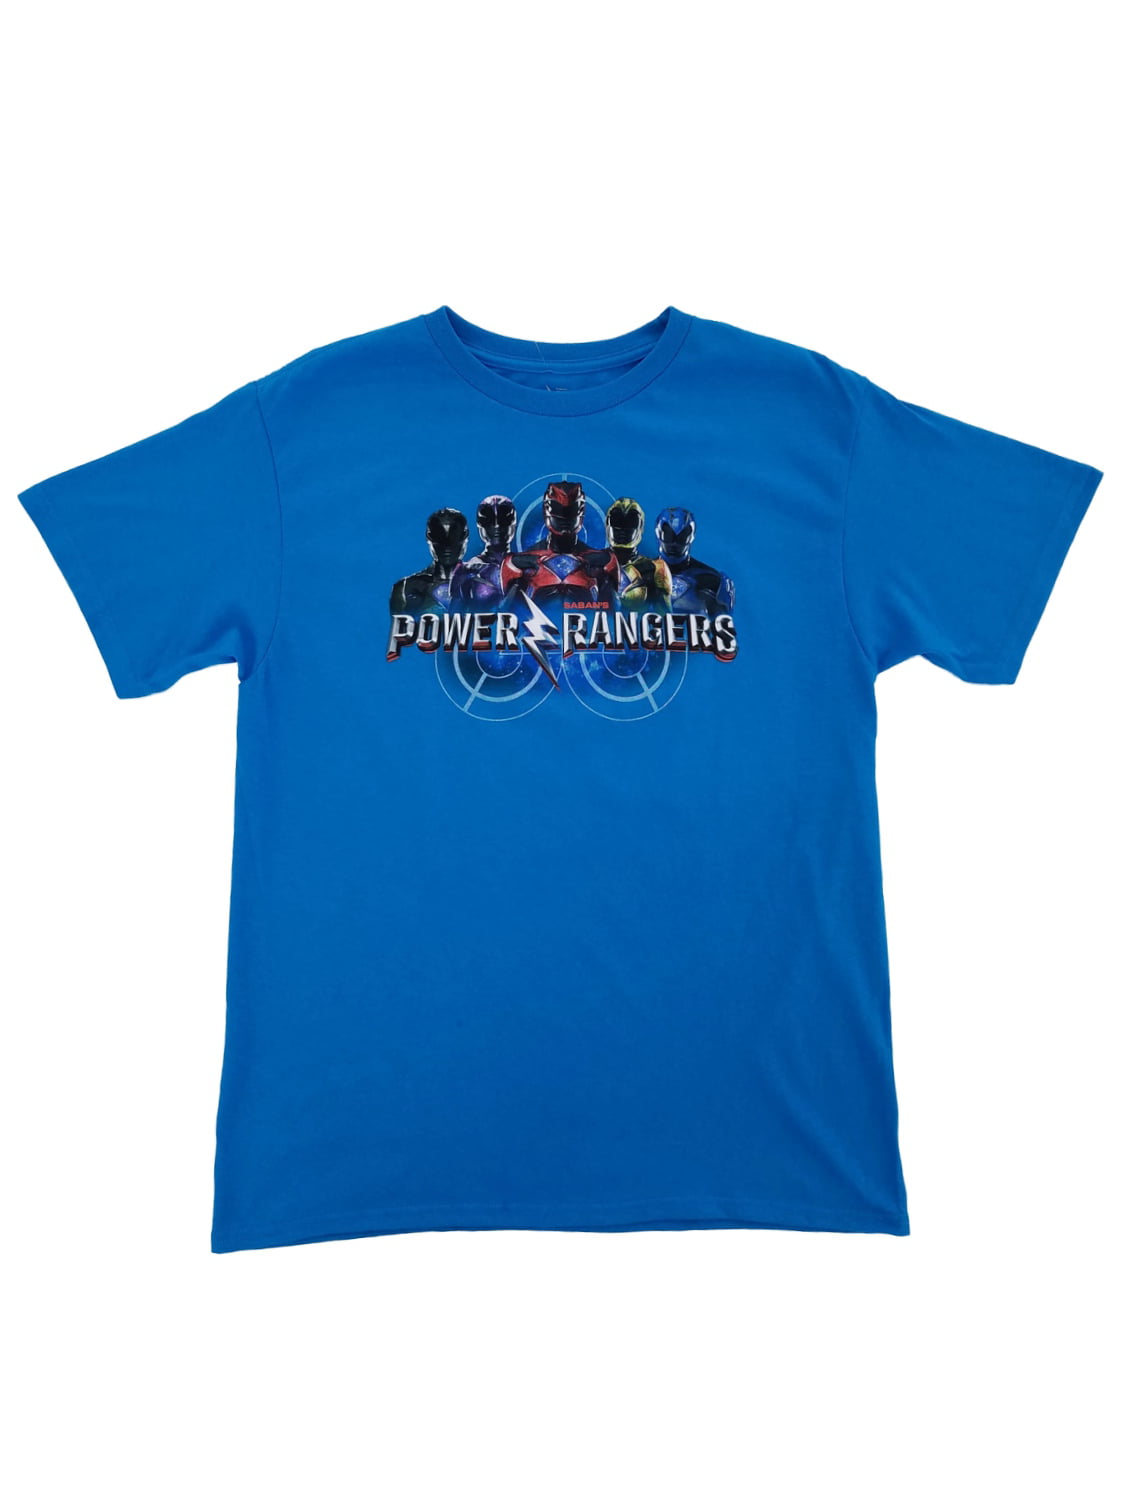 Power Rangers BLUE Ranger 25 Years Licensed T-Shirt KIDS Sizes 4 7 5/6 